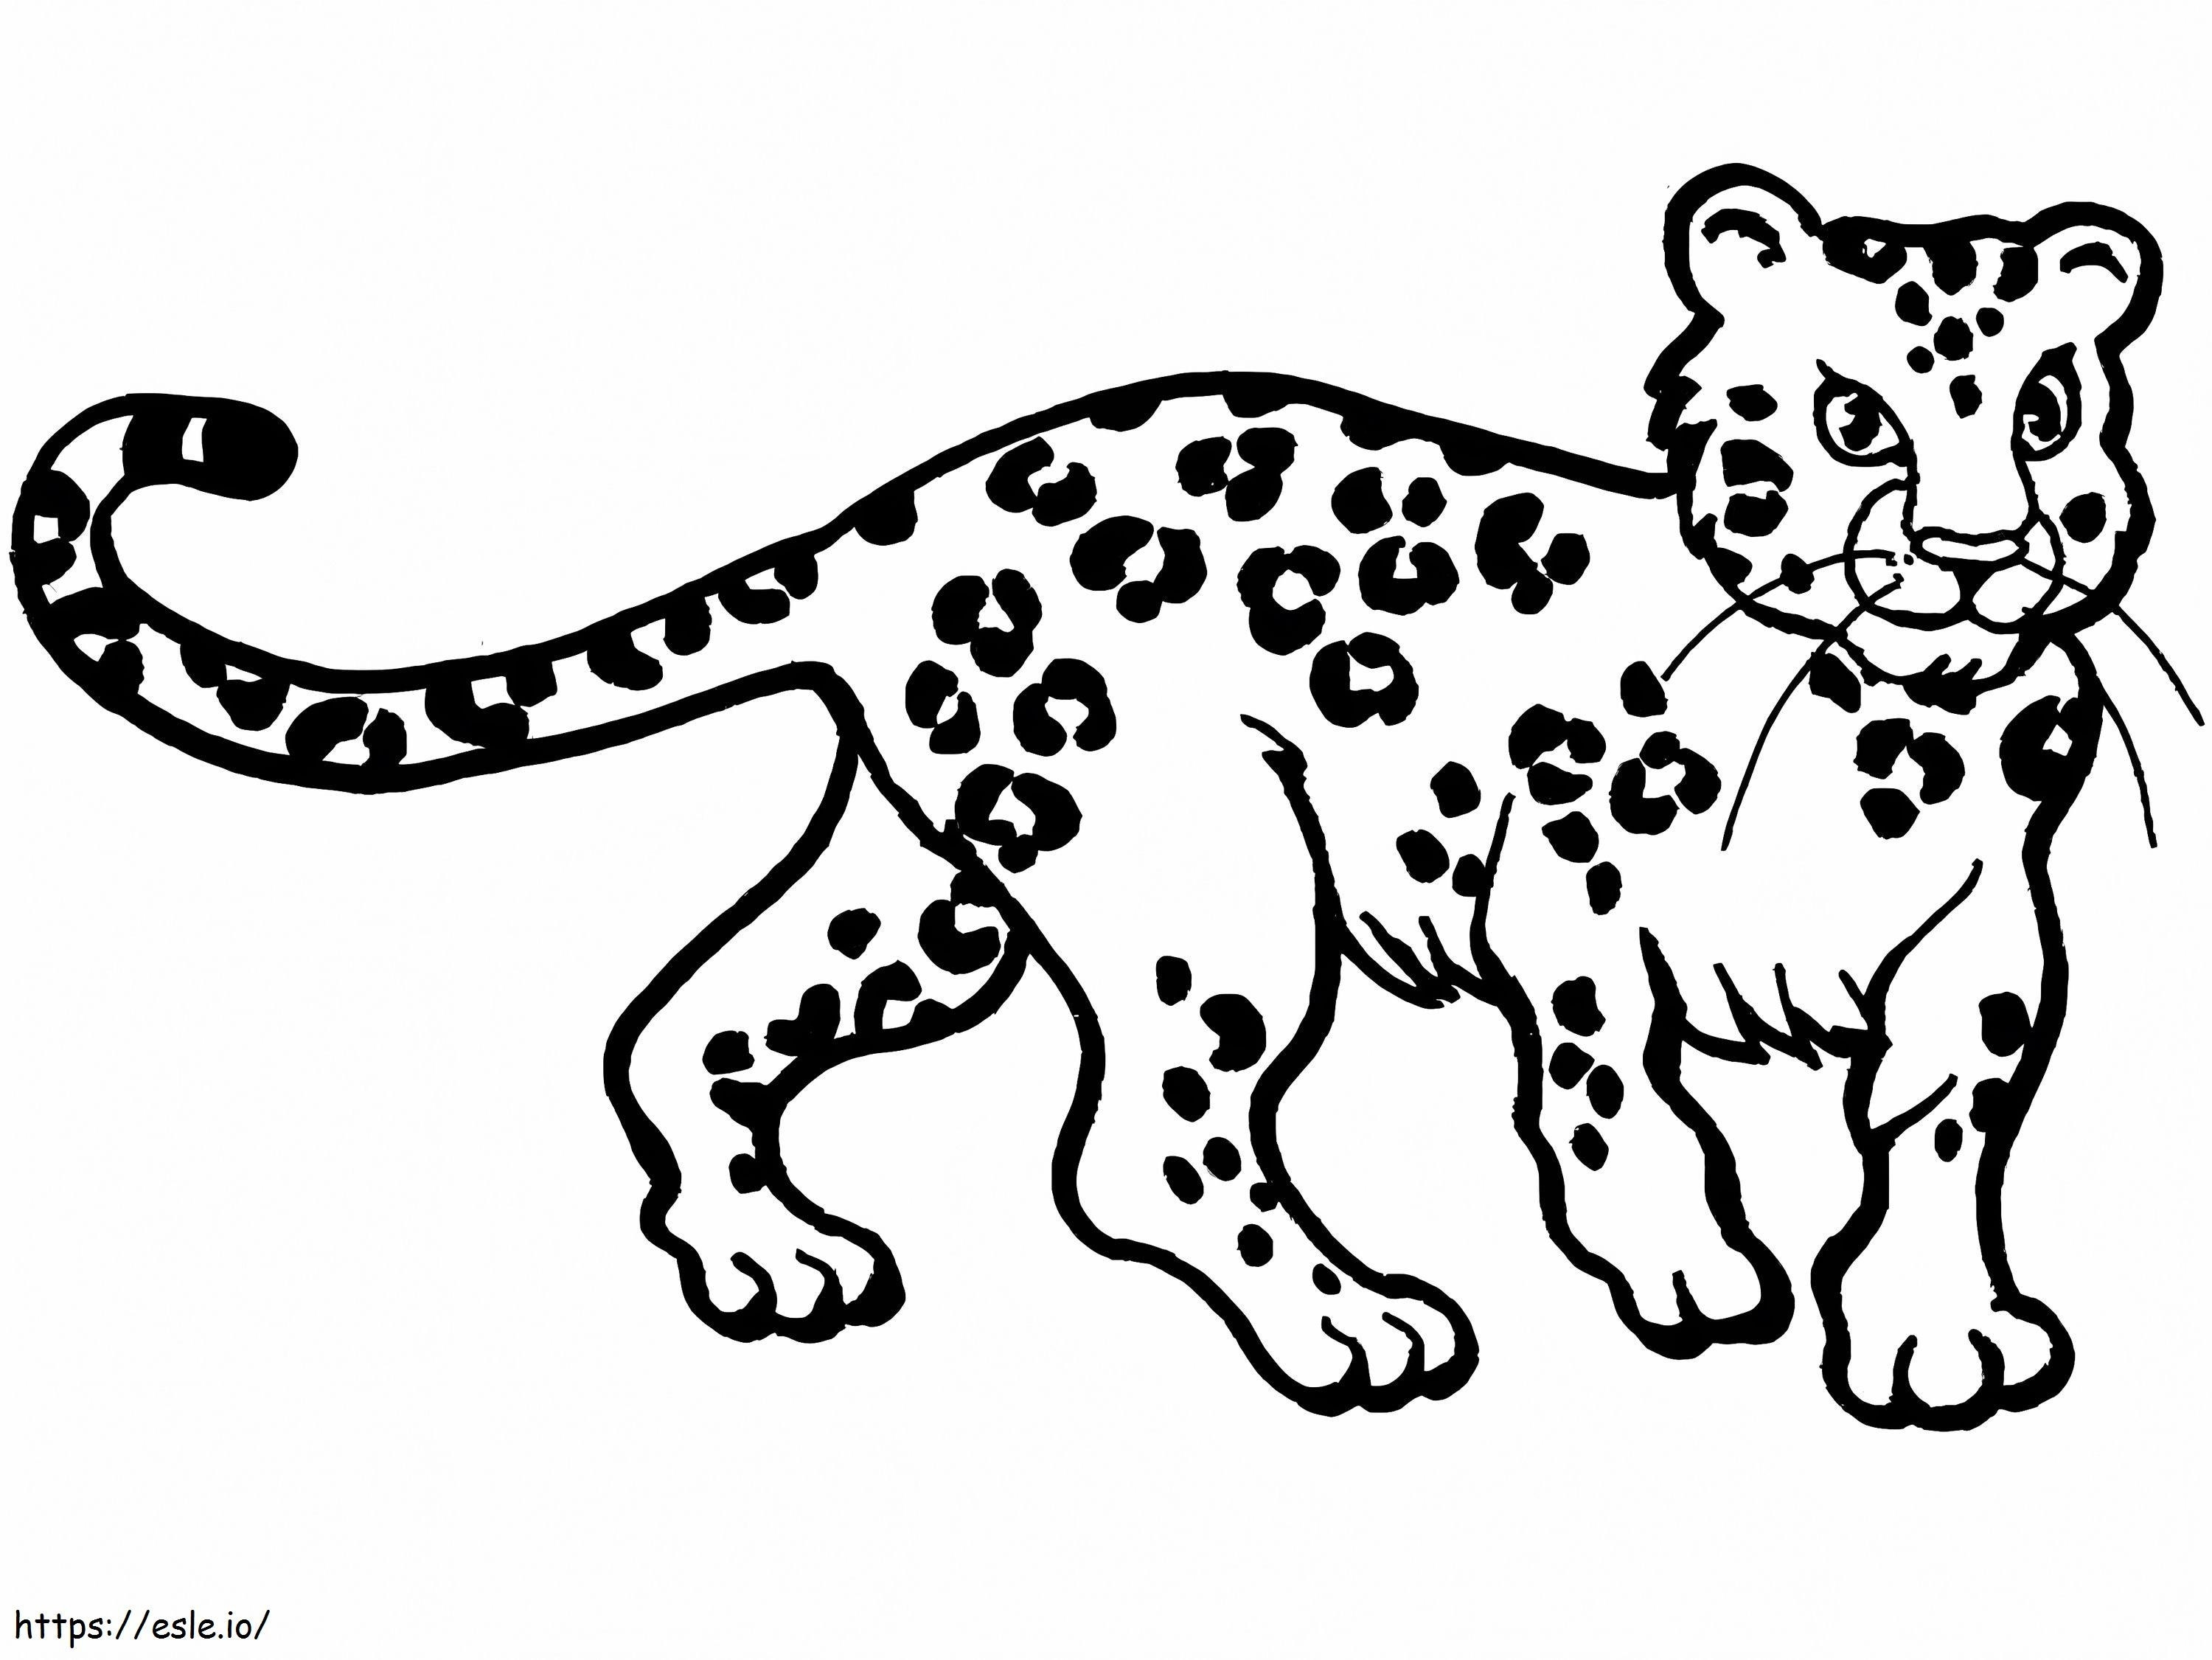 küçük leopar boyama